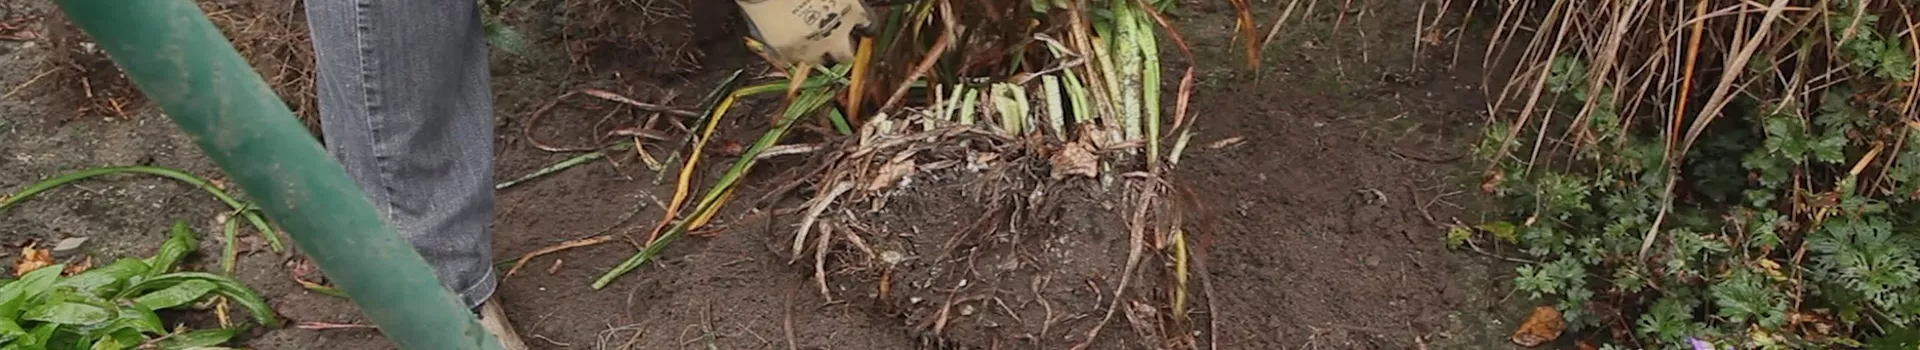 Taglilie - Teilen und Vermehren